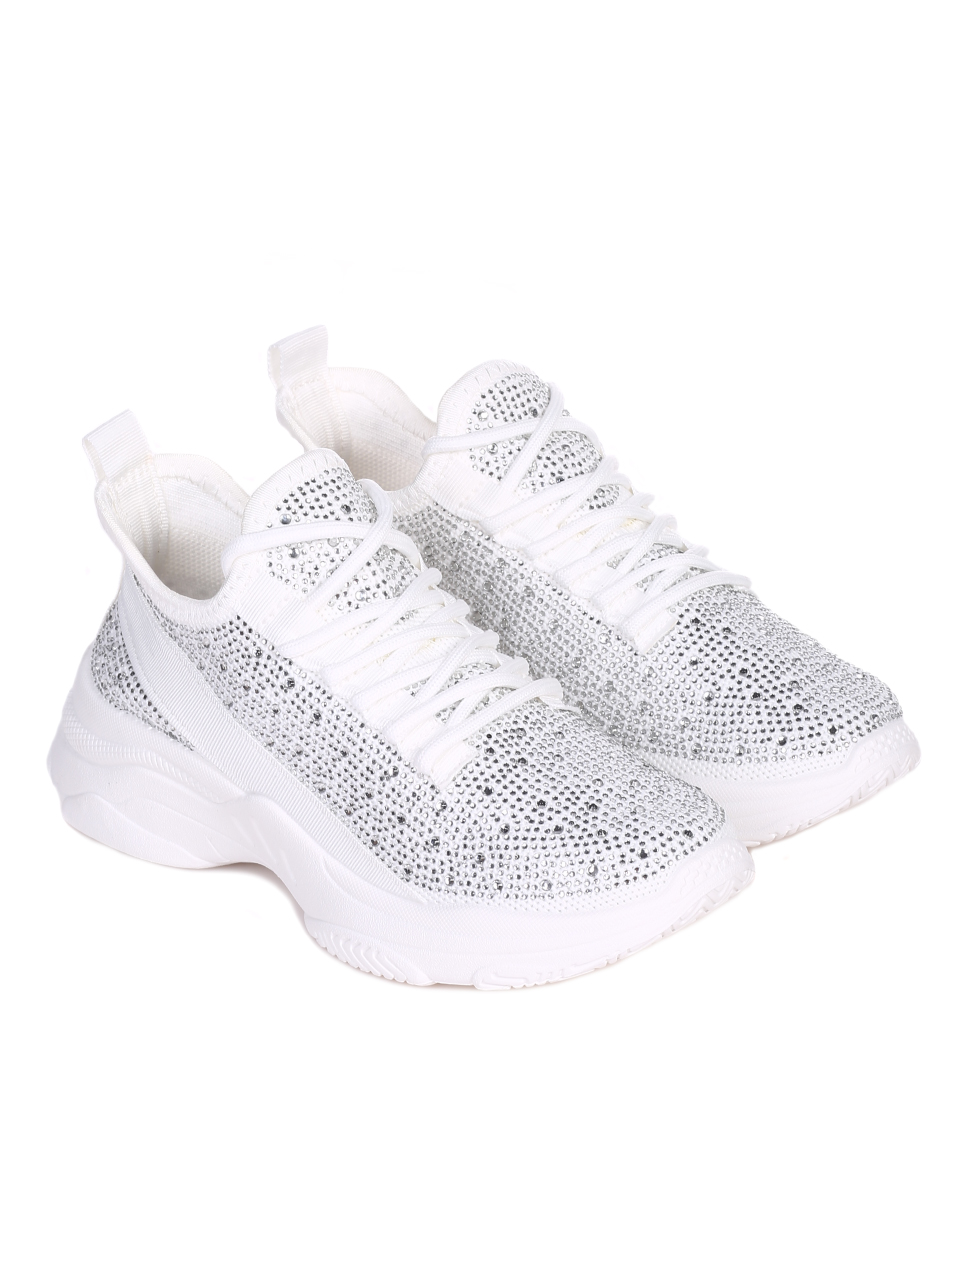 Ежедневни дамски обувки с декоративни камъни в бяло 3U-22030 white